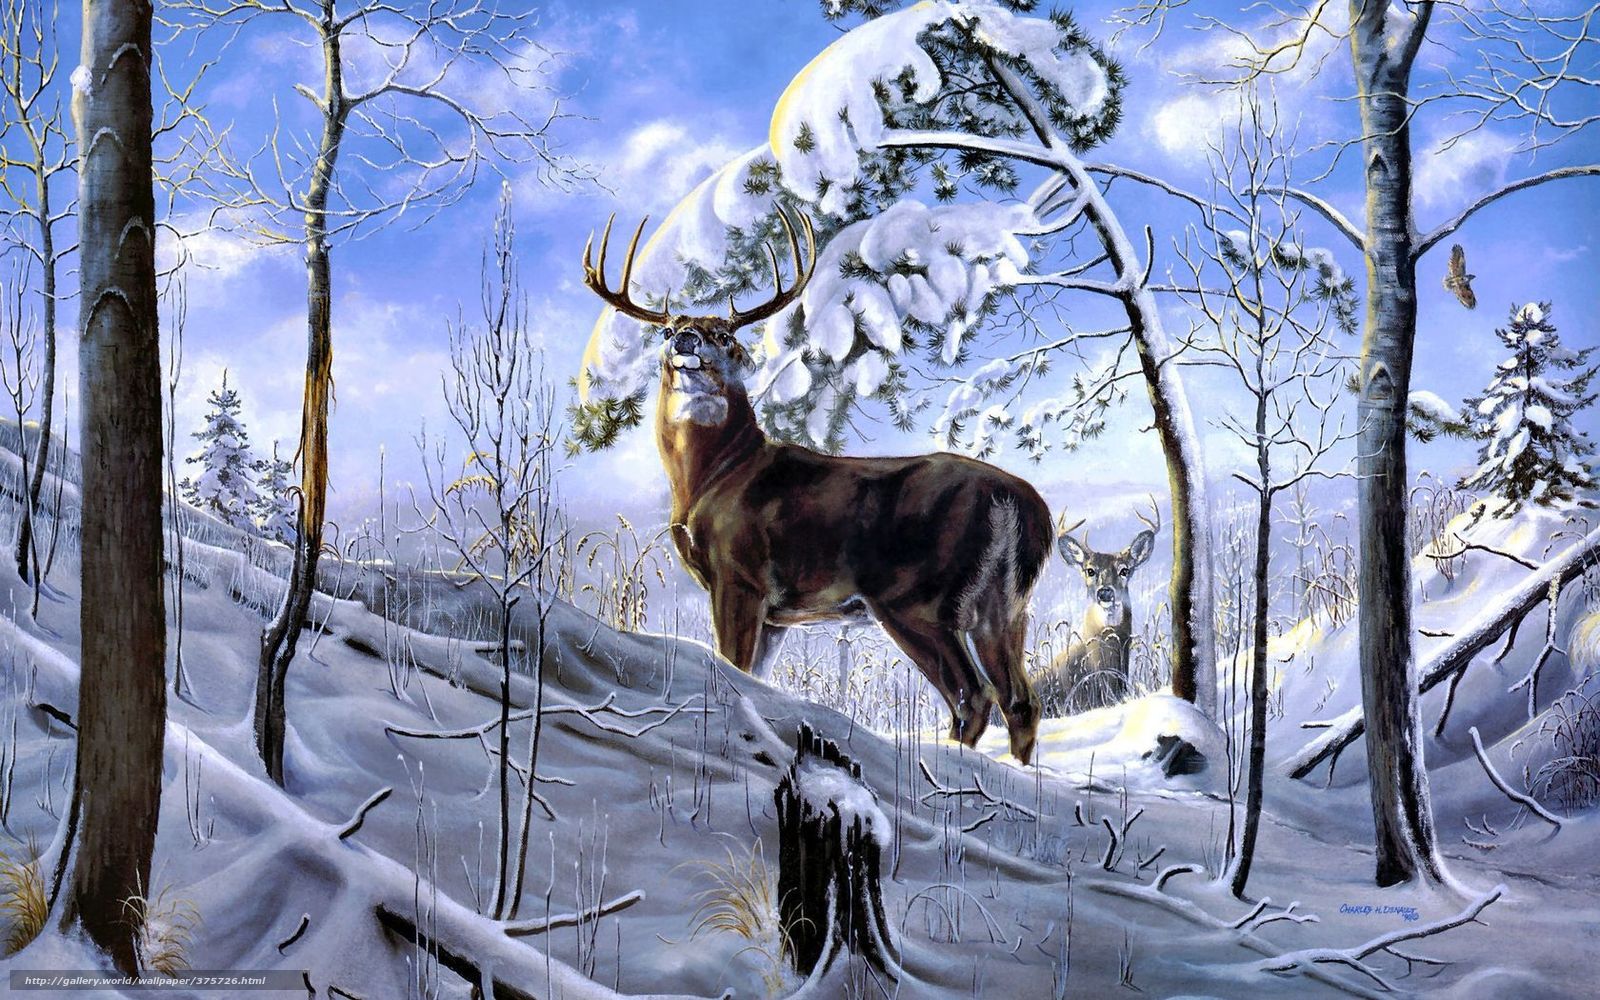 Download wallpaper Deer Winter forest snow free desktop